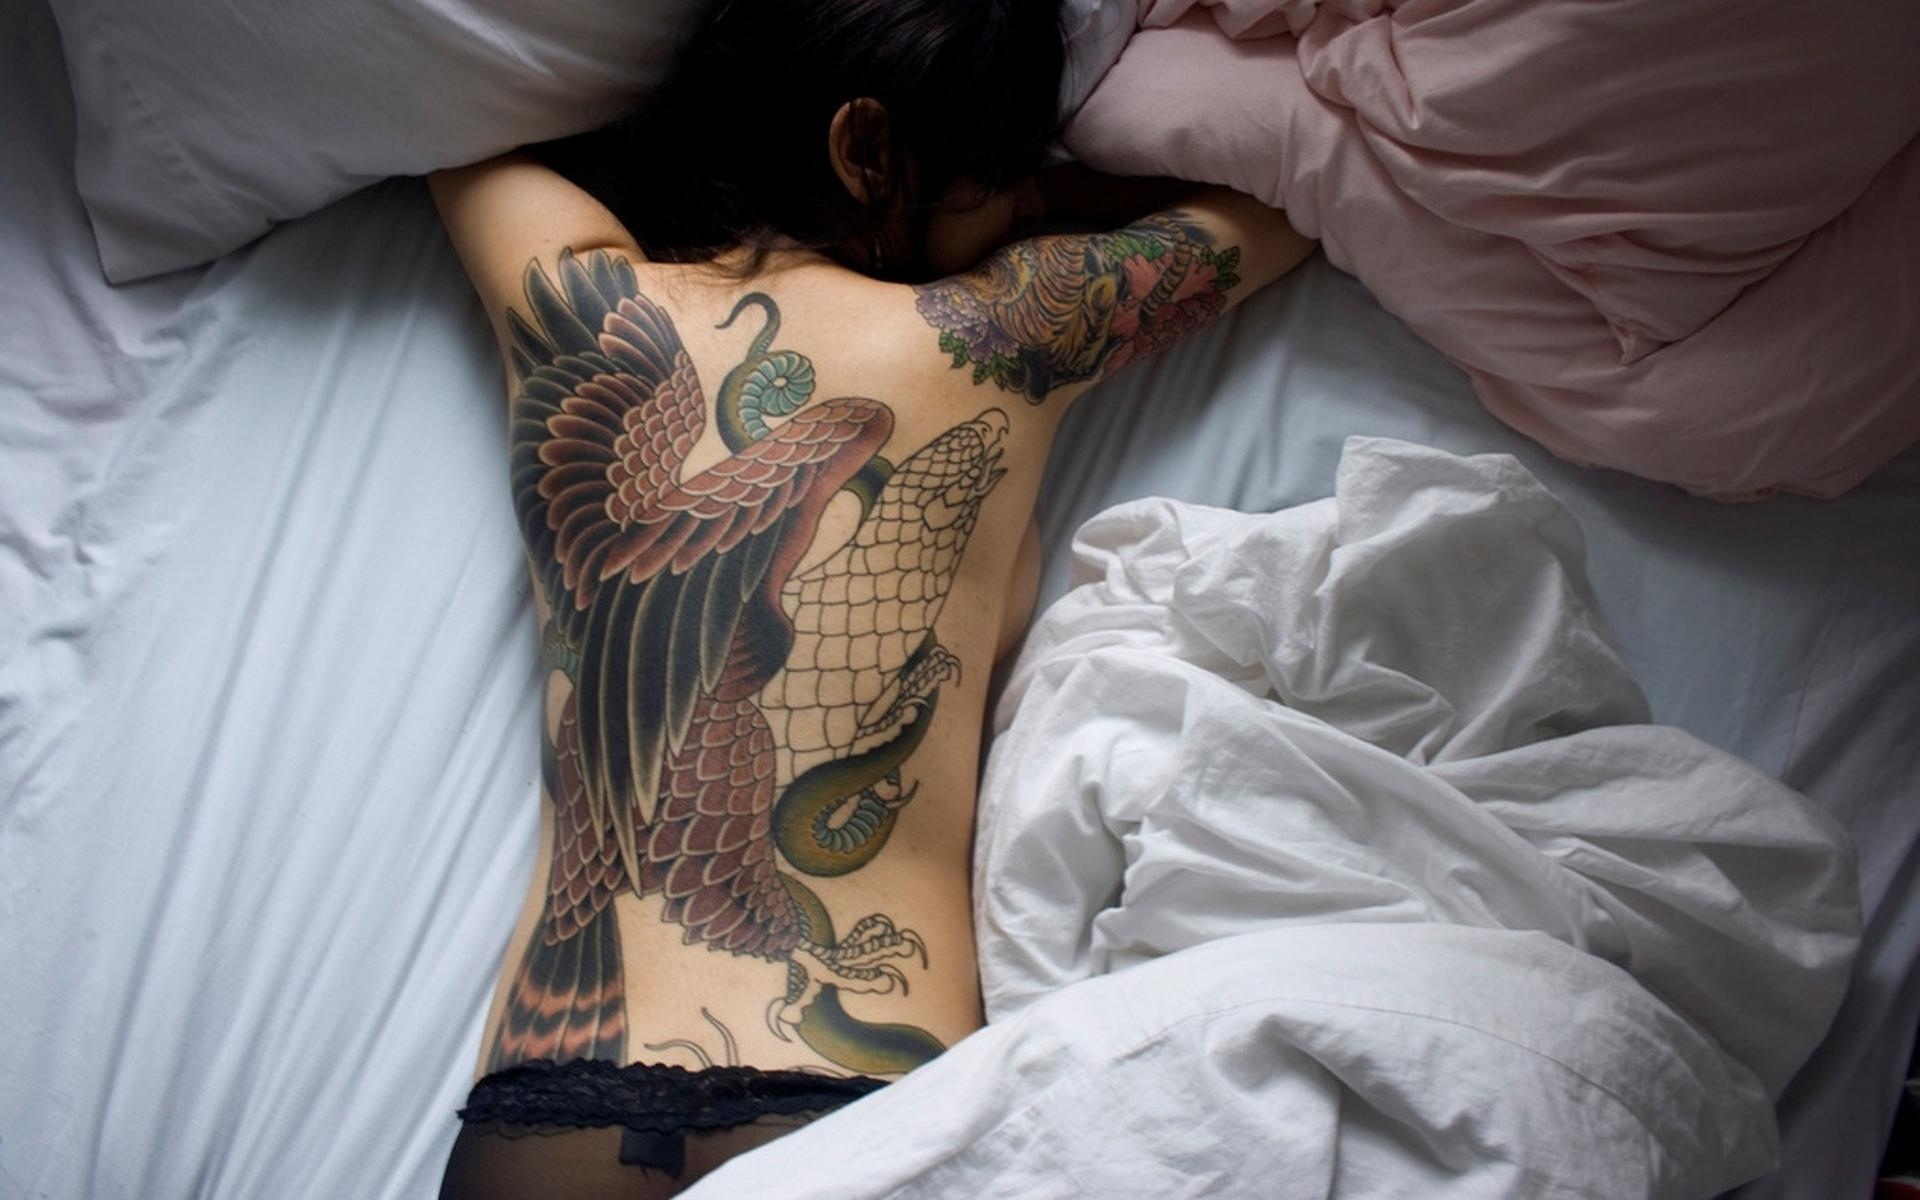 Татуированные девушки устроили своему другу в спальне групповуху